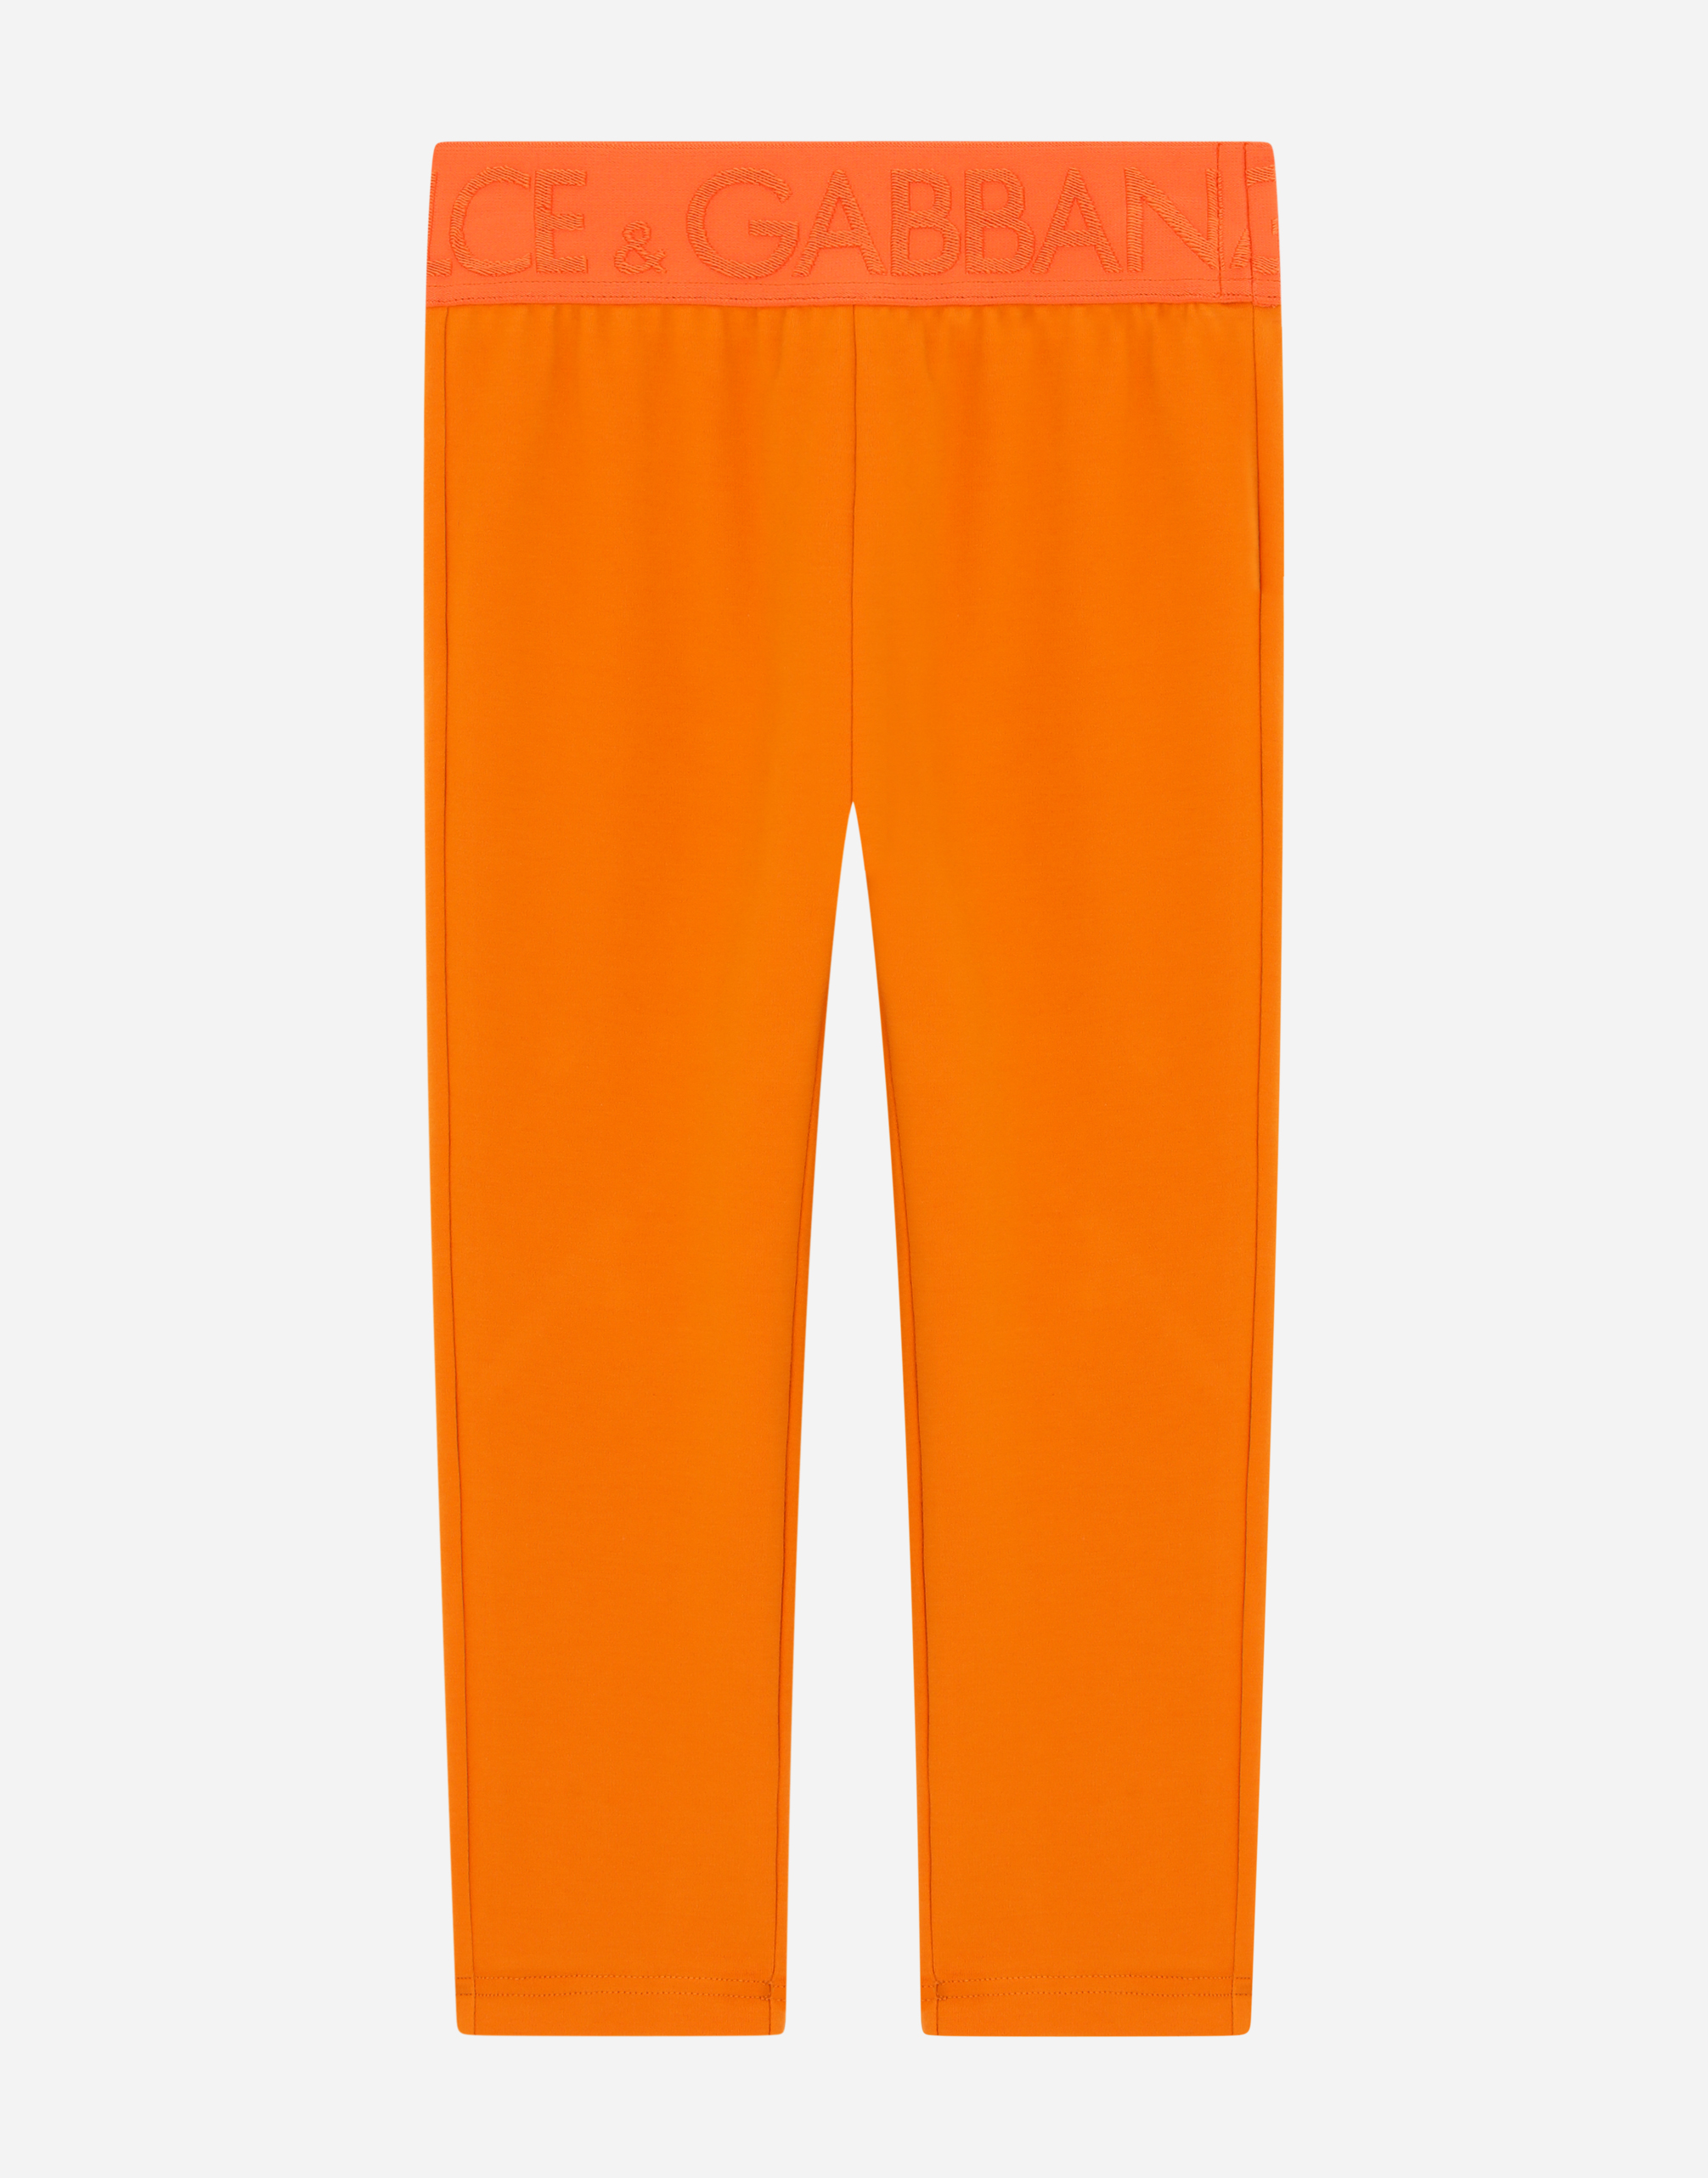 Interlock leggings with branded elastic in Orange